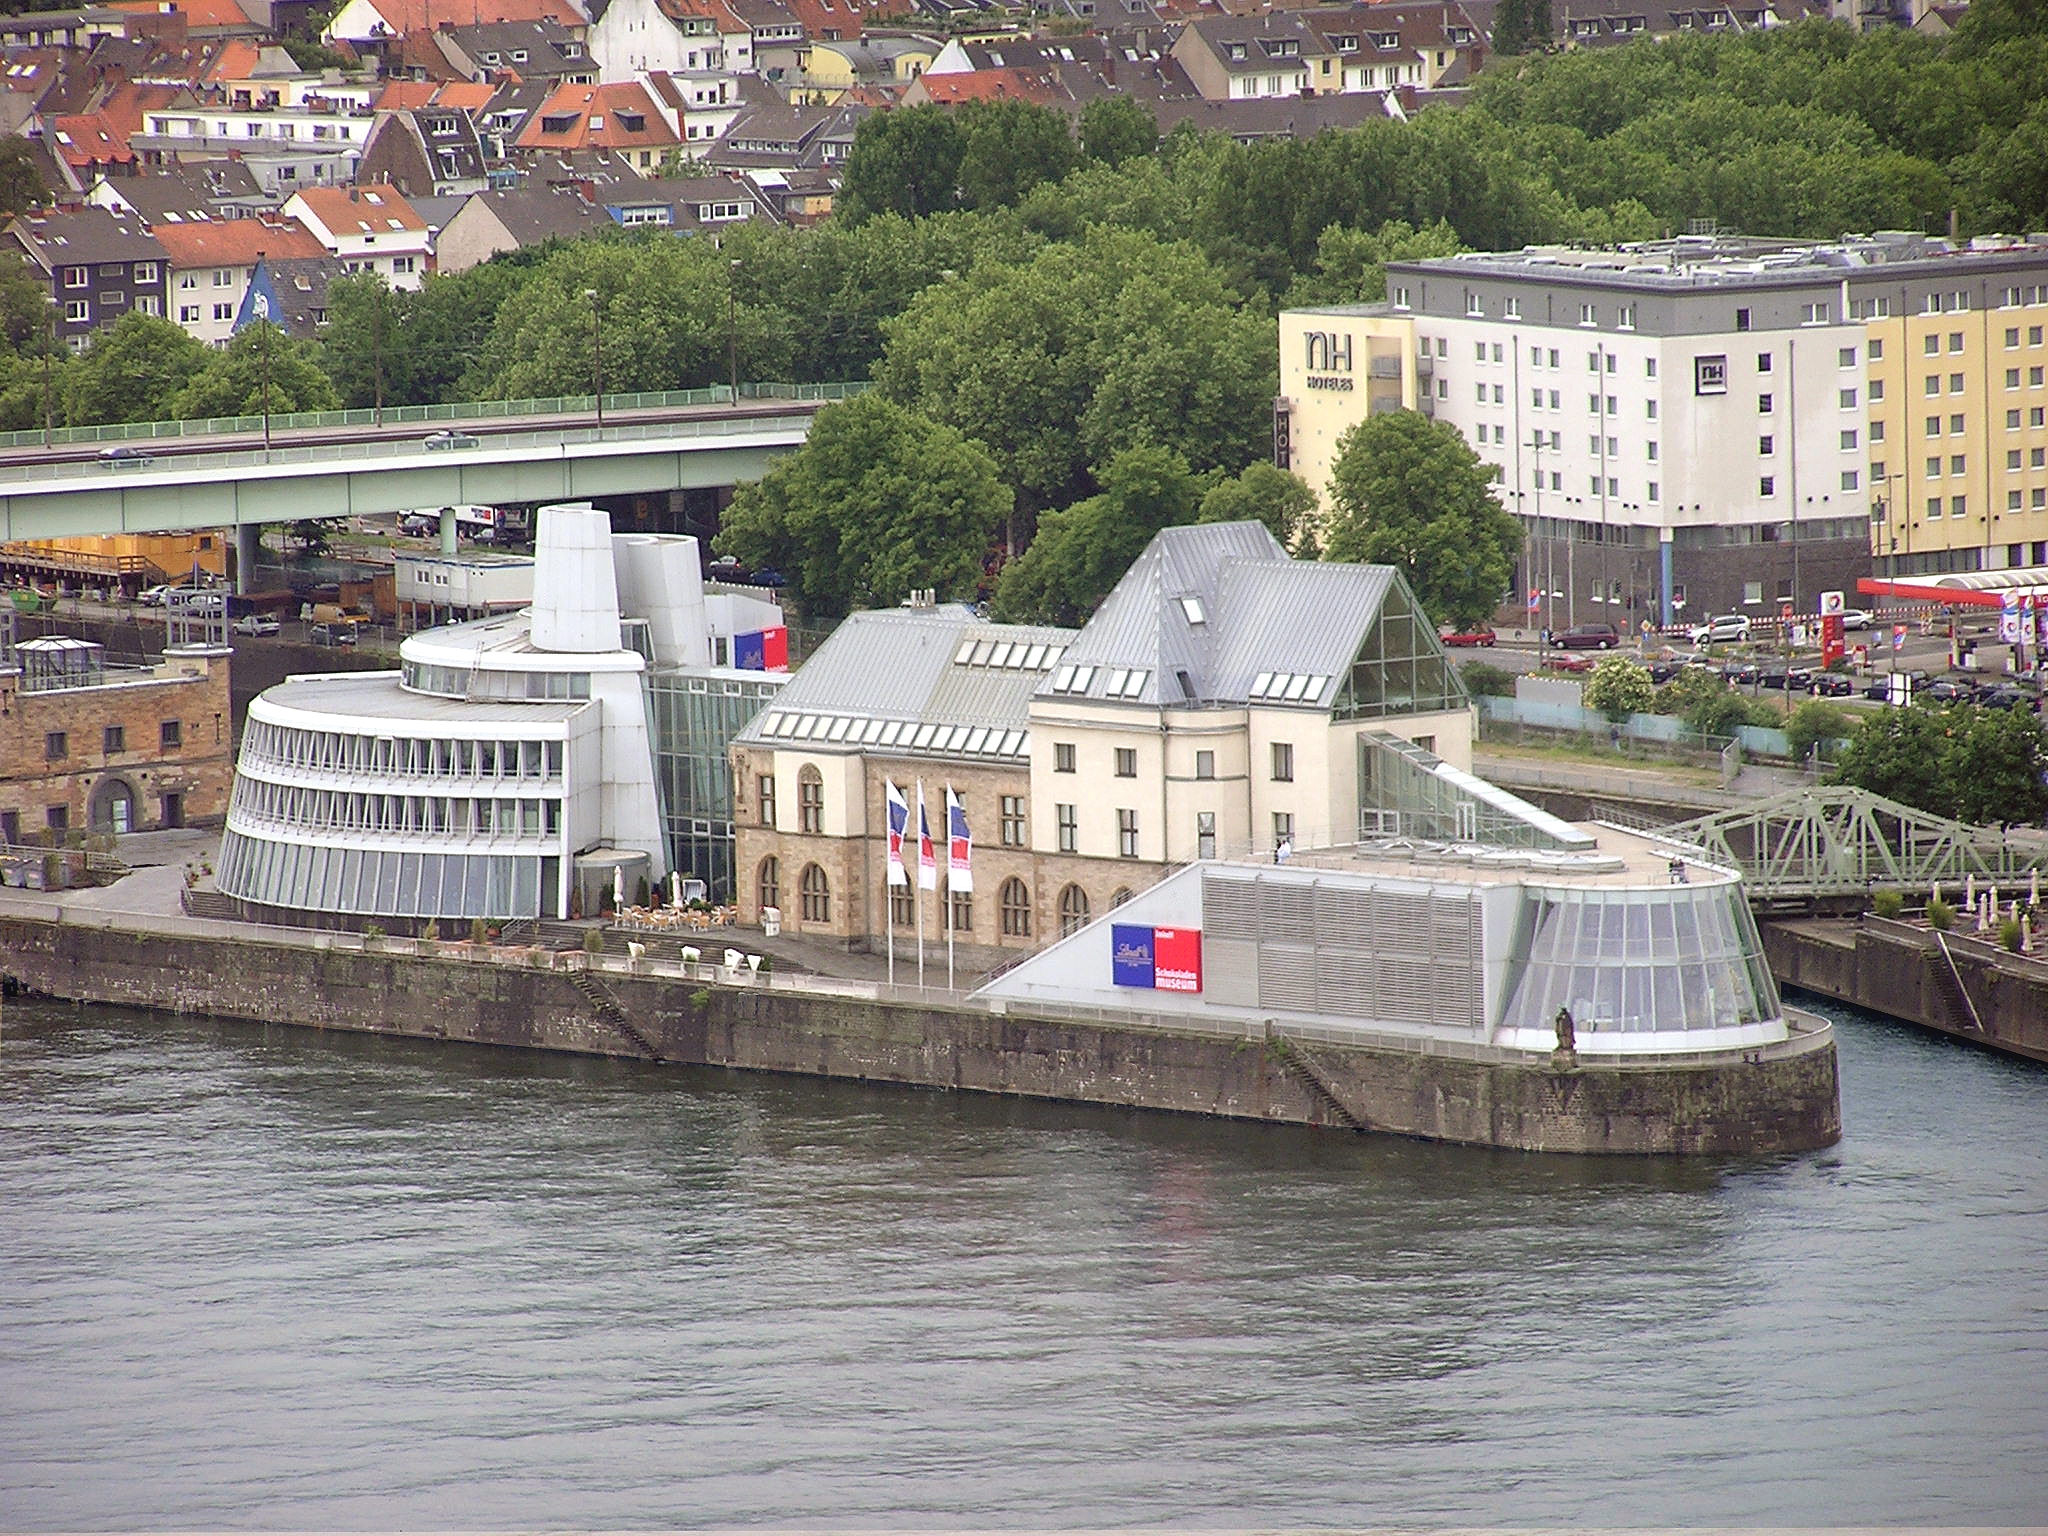 Luftbild: Das Museumsgebäude befindet sich auf einer Halbinsel, die in den Rhein hineinragt